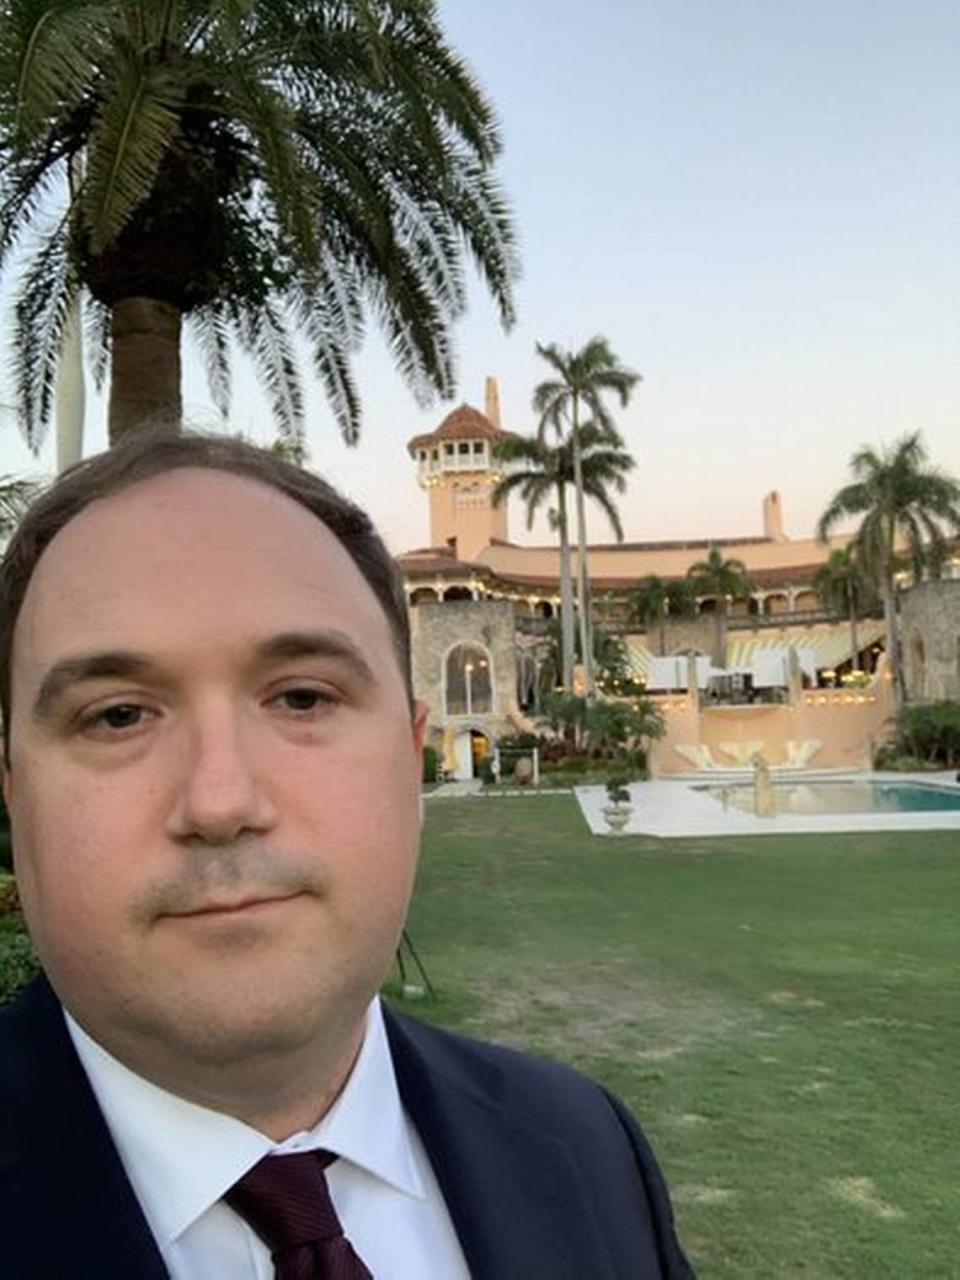 William Wilkerson, vicepresidente sénior de operaciones de Trump Media, con sede en Sarasota, es visto en Mar-a-Lago. Wilkerson ha presentado una denuncia ante la SEC en la que alega infracciones bursátiles relacionadas con la fusión de Trump Media y Digital World.